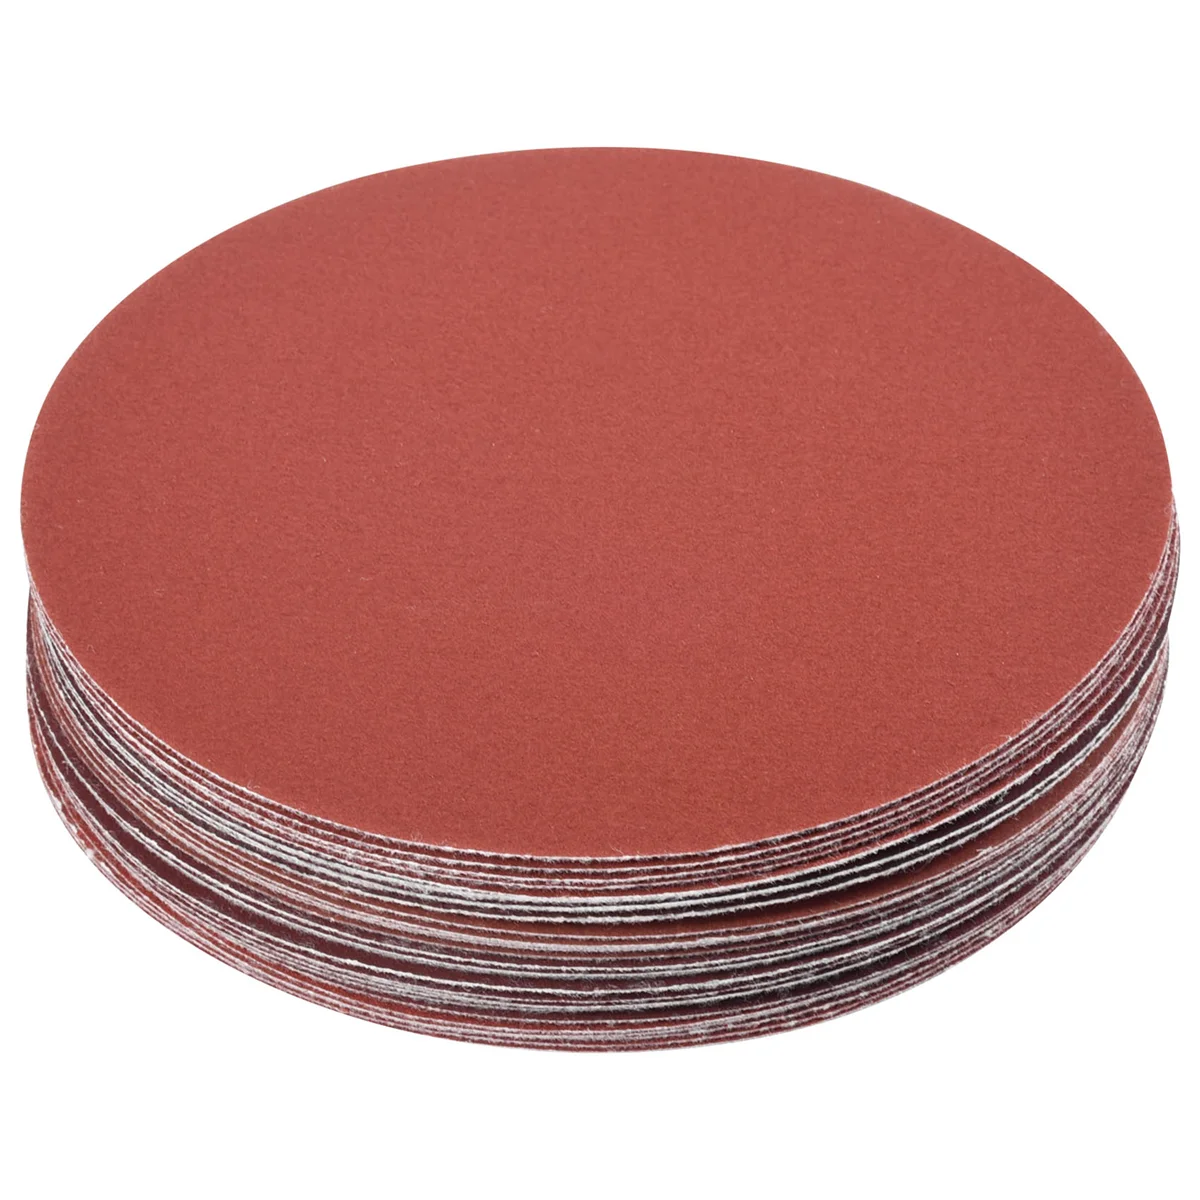 

30PCS 5 inch 125mm Round Sandpaper Disk Sand Sheets Grit 320/400/600/800/1000/1500 Hook & Loop Sanding Disc for Sander Grits